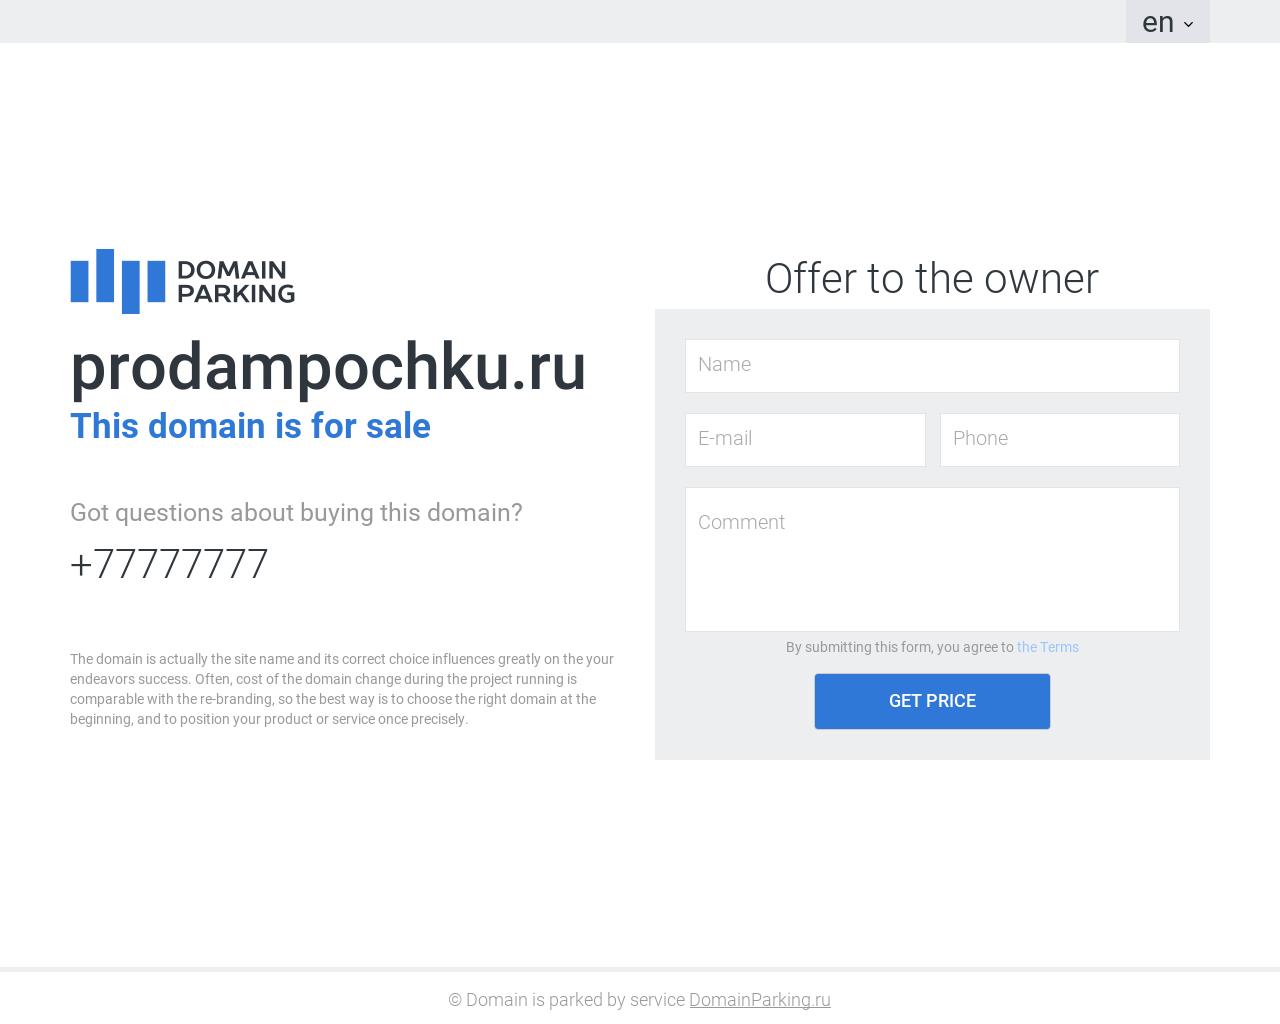 Изображение сайта prodampochku.ru в разрешении 1280x1024